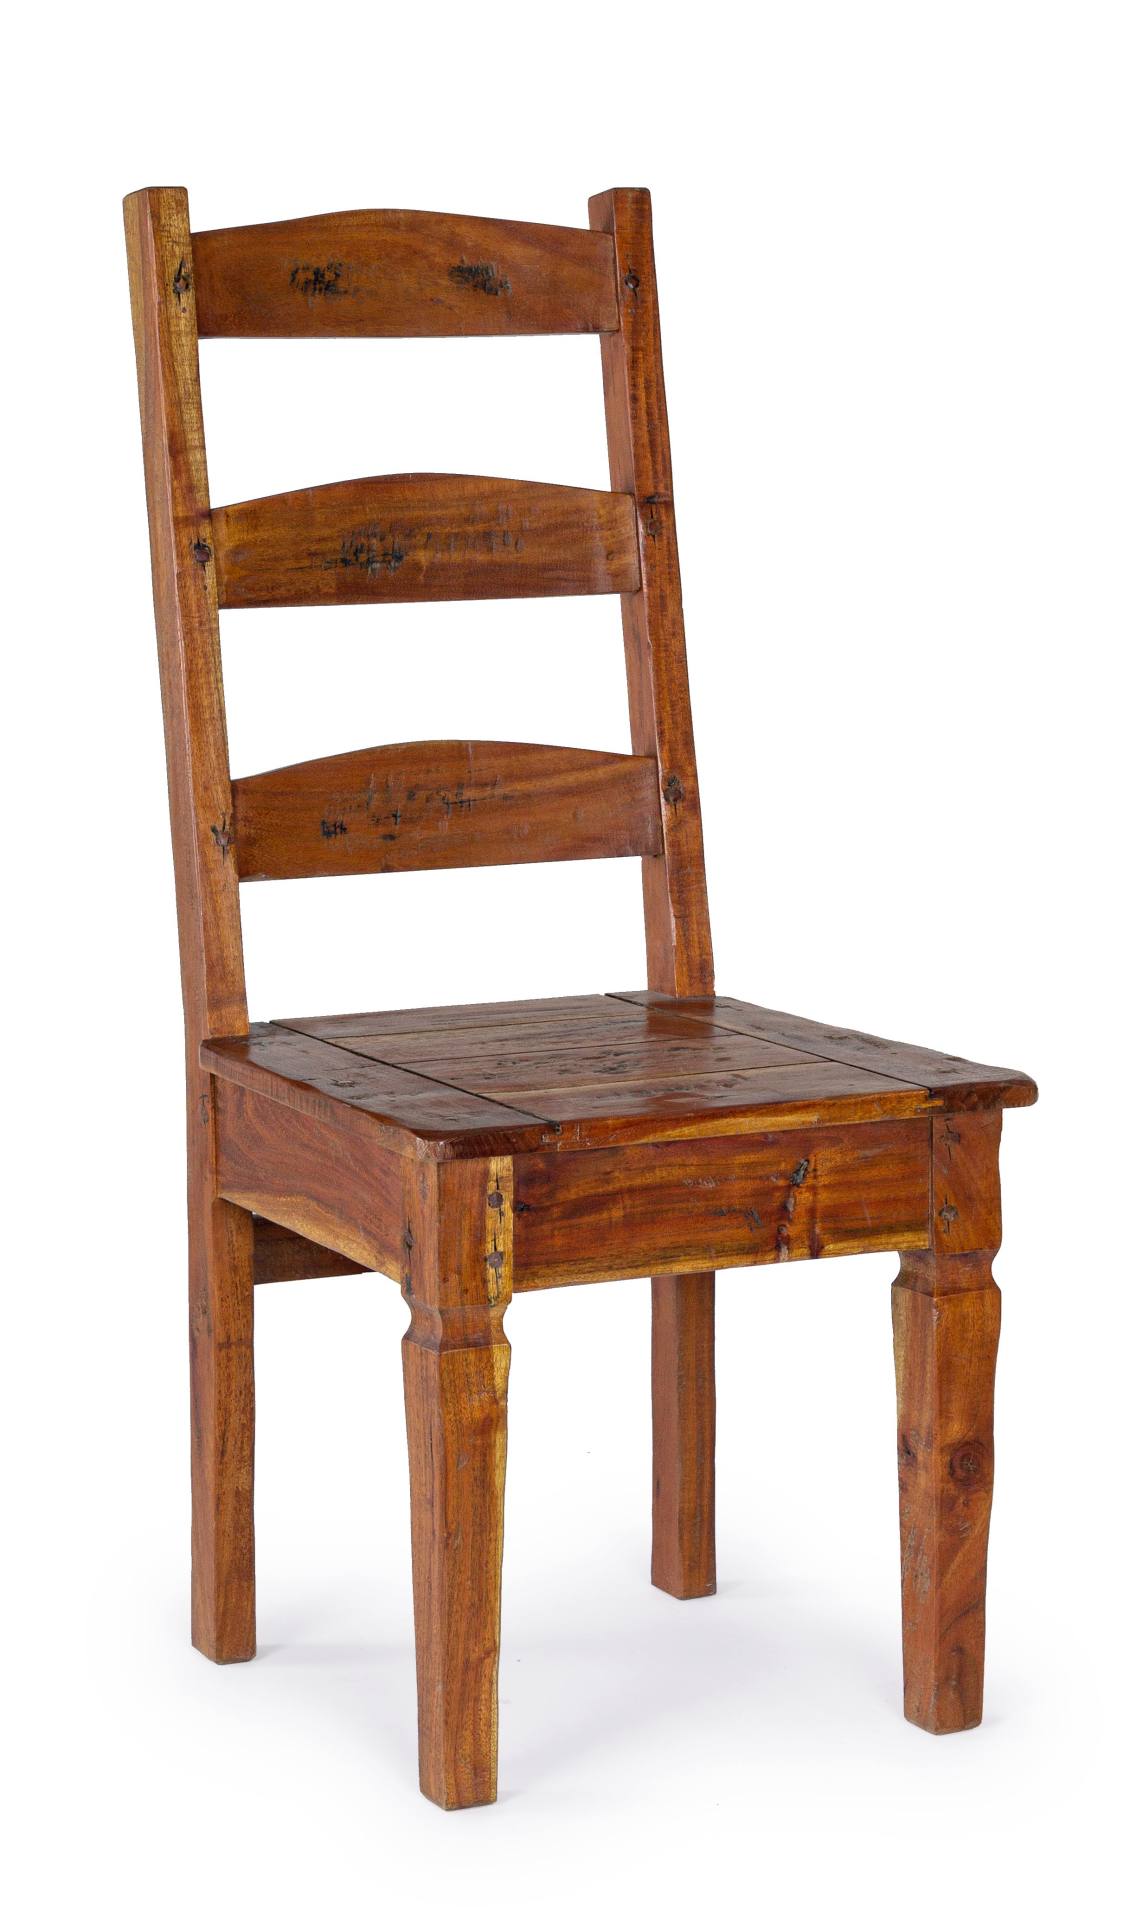 Der Stuhl Chateaux überzeugt mit seinem klassischen Design. Gefertigt wurde der Stuhl aus Akazienholz, welches einen natürlichen Farbton besitzt. Die Sitzhöhe beträgt 46 cm.